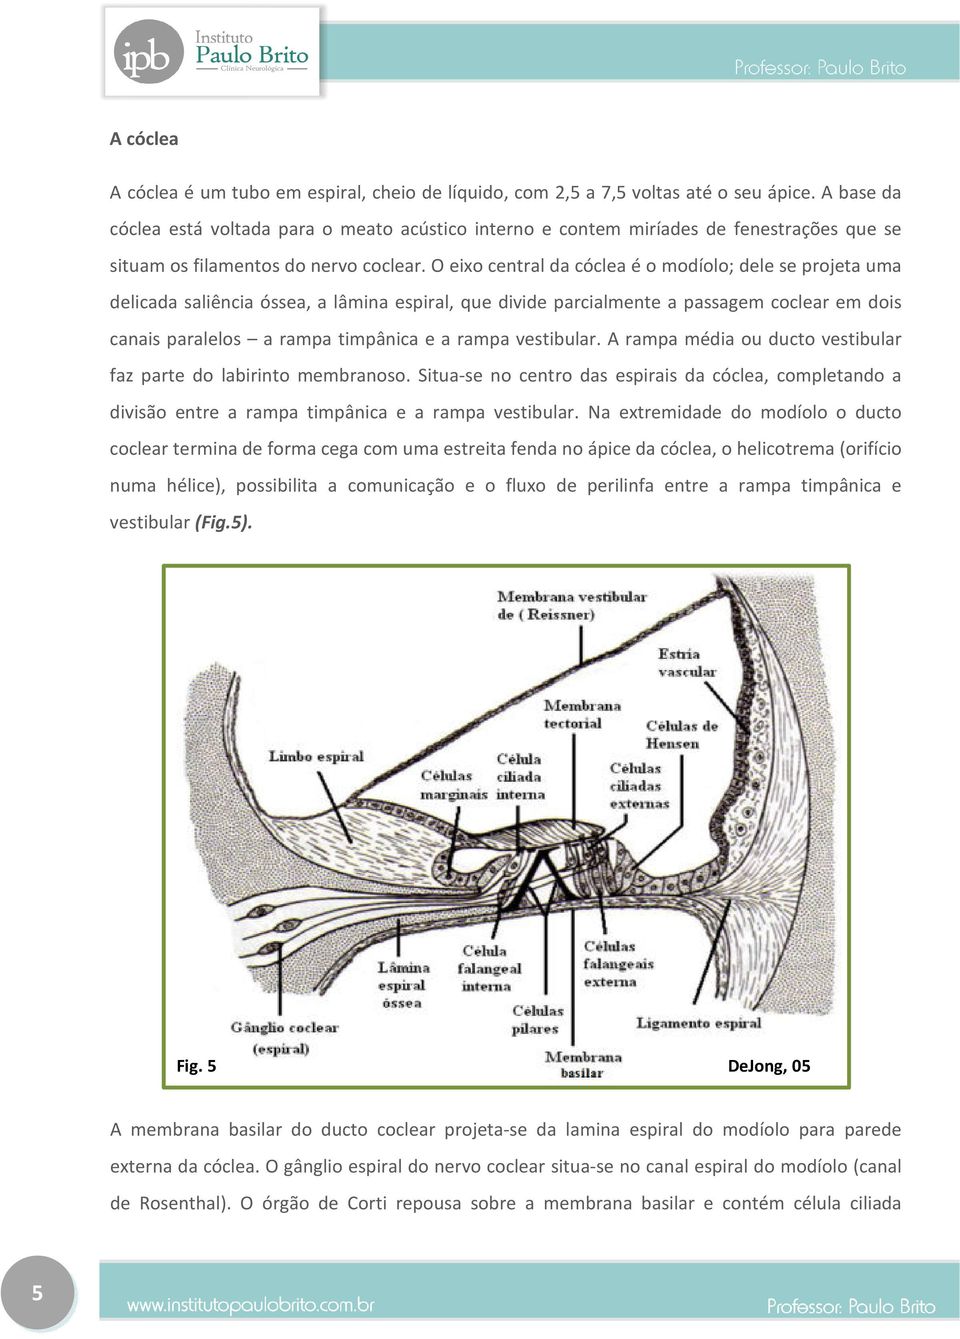 O eixo central da cóclea é o modíolo; dele se projeta uma delicada saliência óssea, a lâmina espiral, que divide parcialmente a passagem coclear em dois canais paralelos a rampa timpânica e a rampa